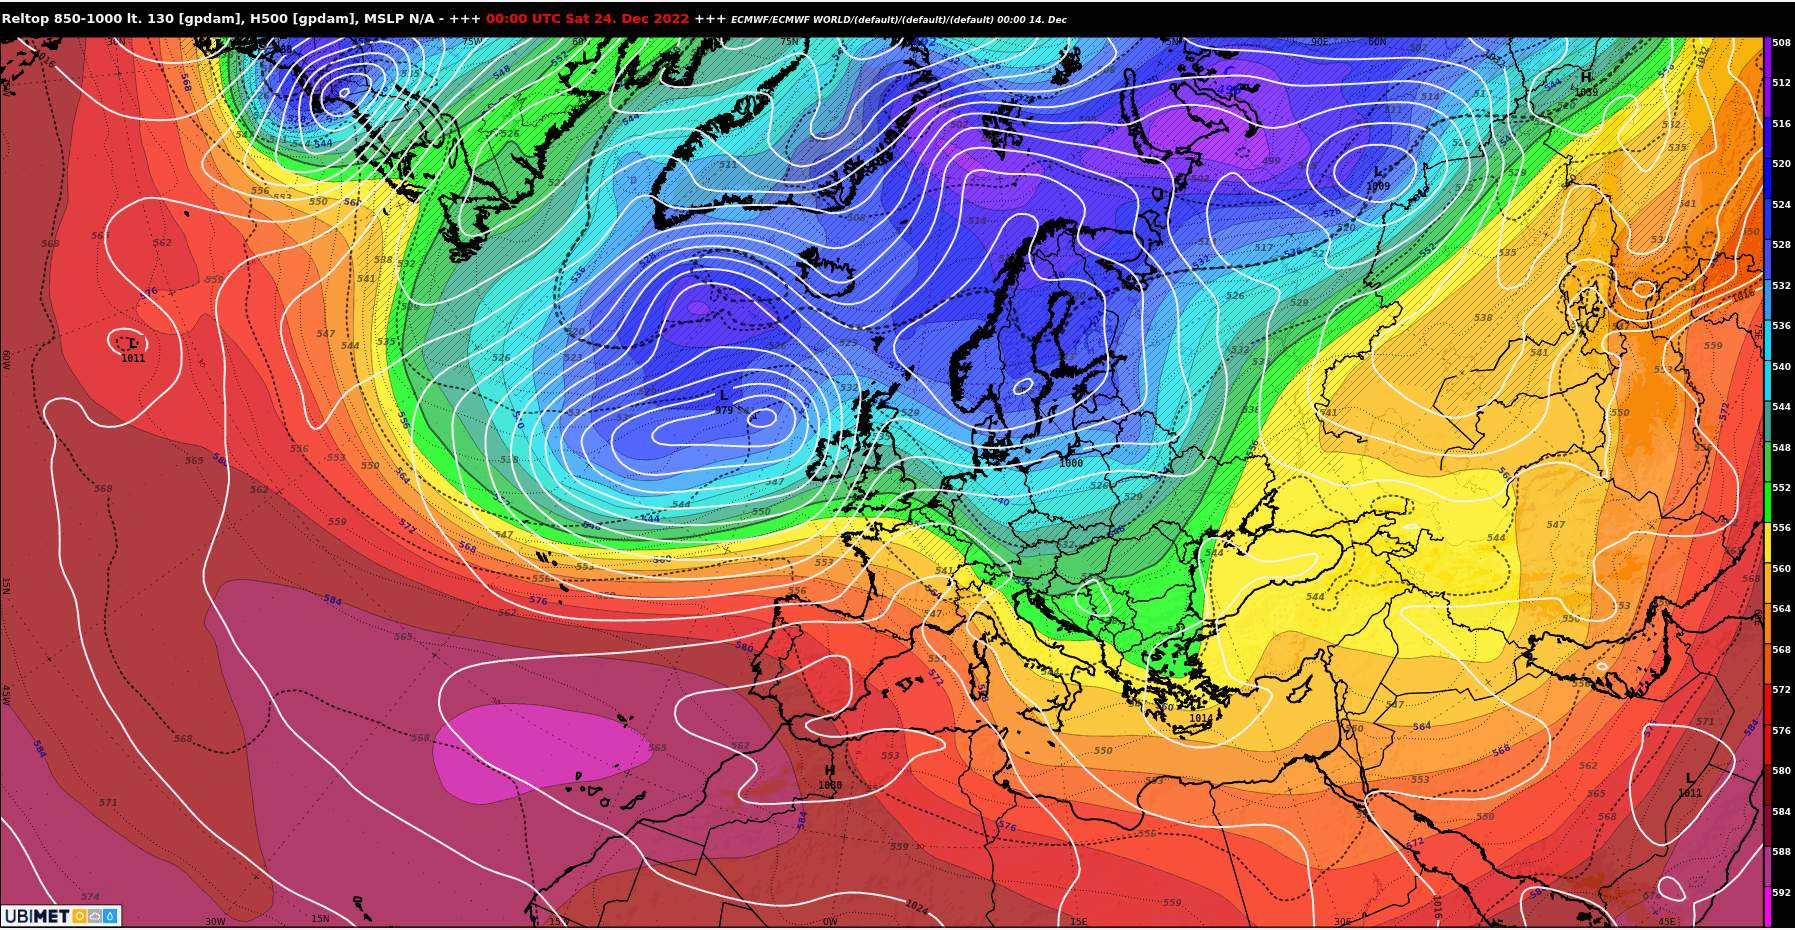 Abb. 1: Prognostizierte Luftmassenverteilung am 24. Dezember gemäss europäischem Wettermodell - man erkennt, wie sich ein potenzieller Hochdruckrücken aufbauen könnte